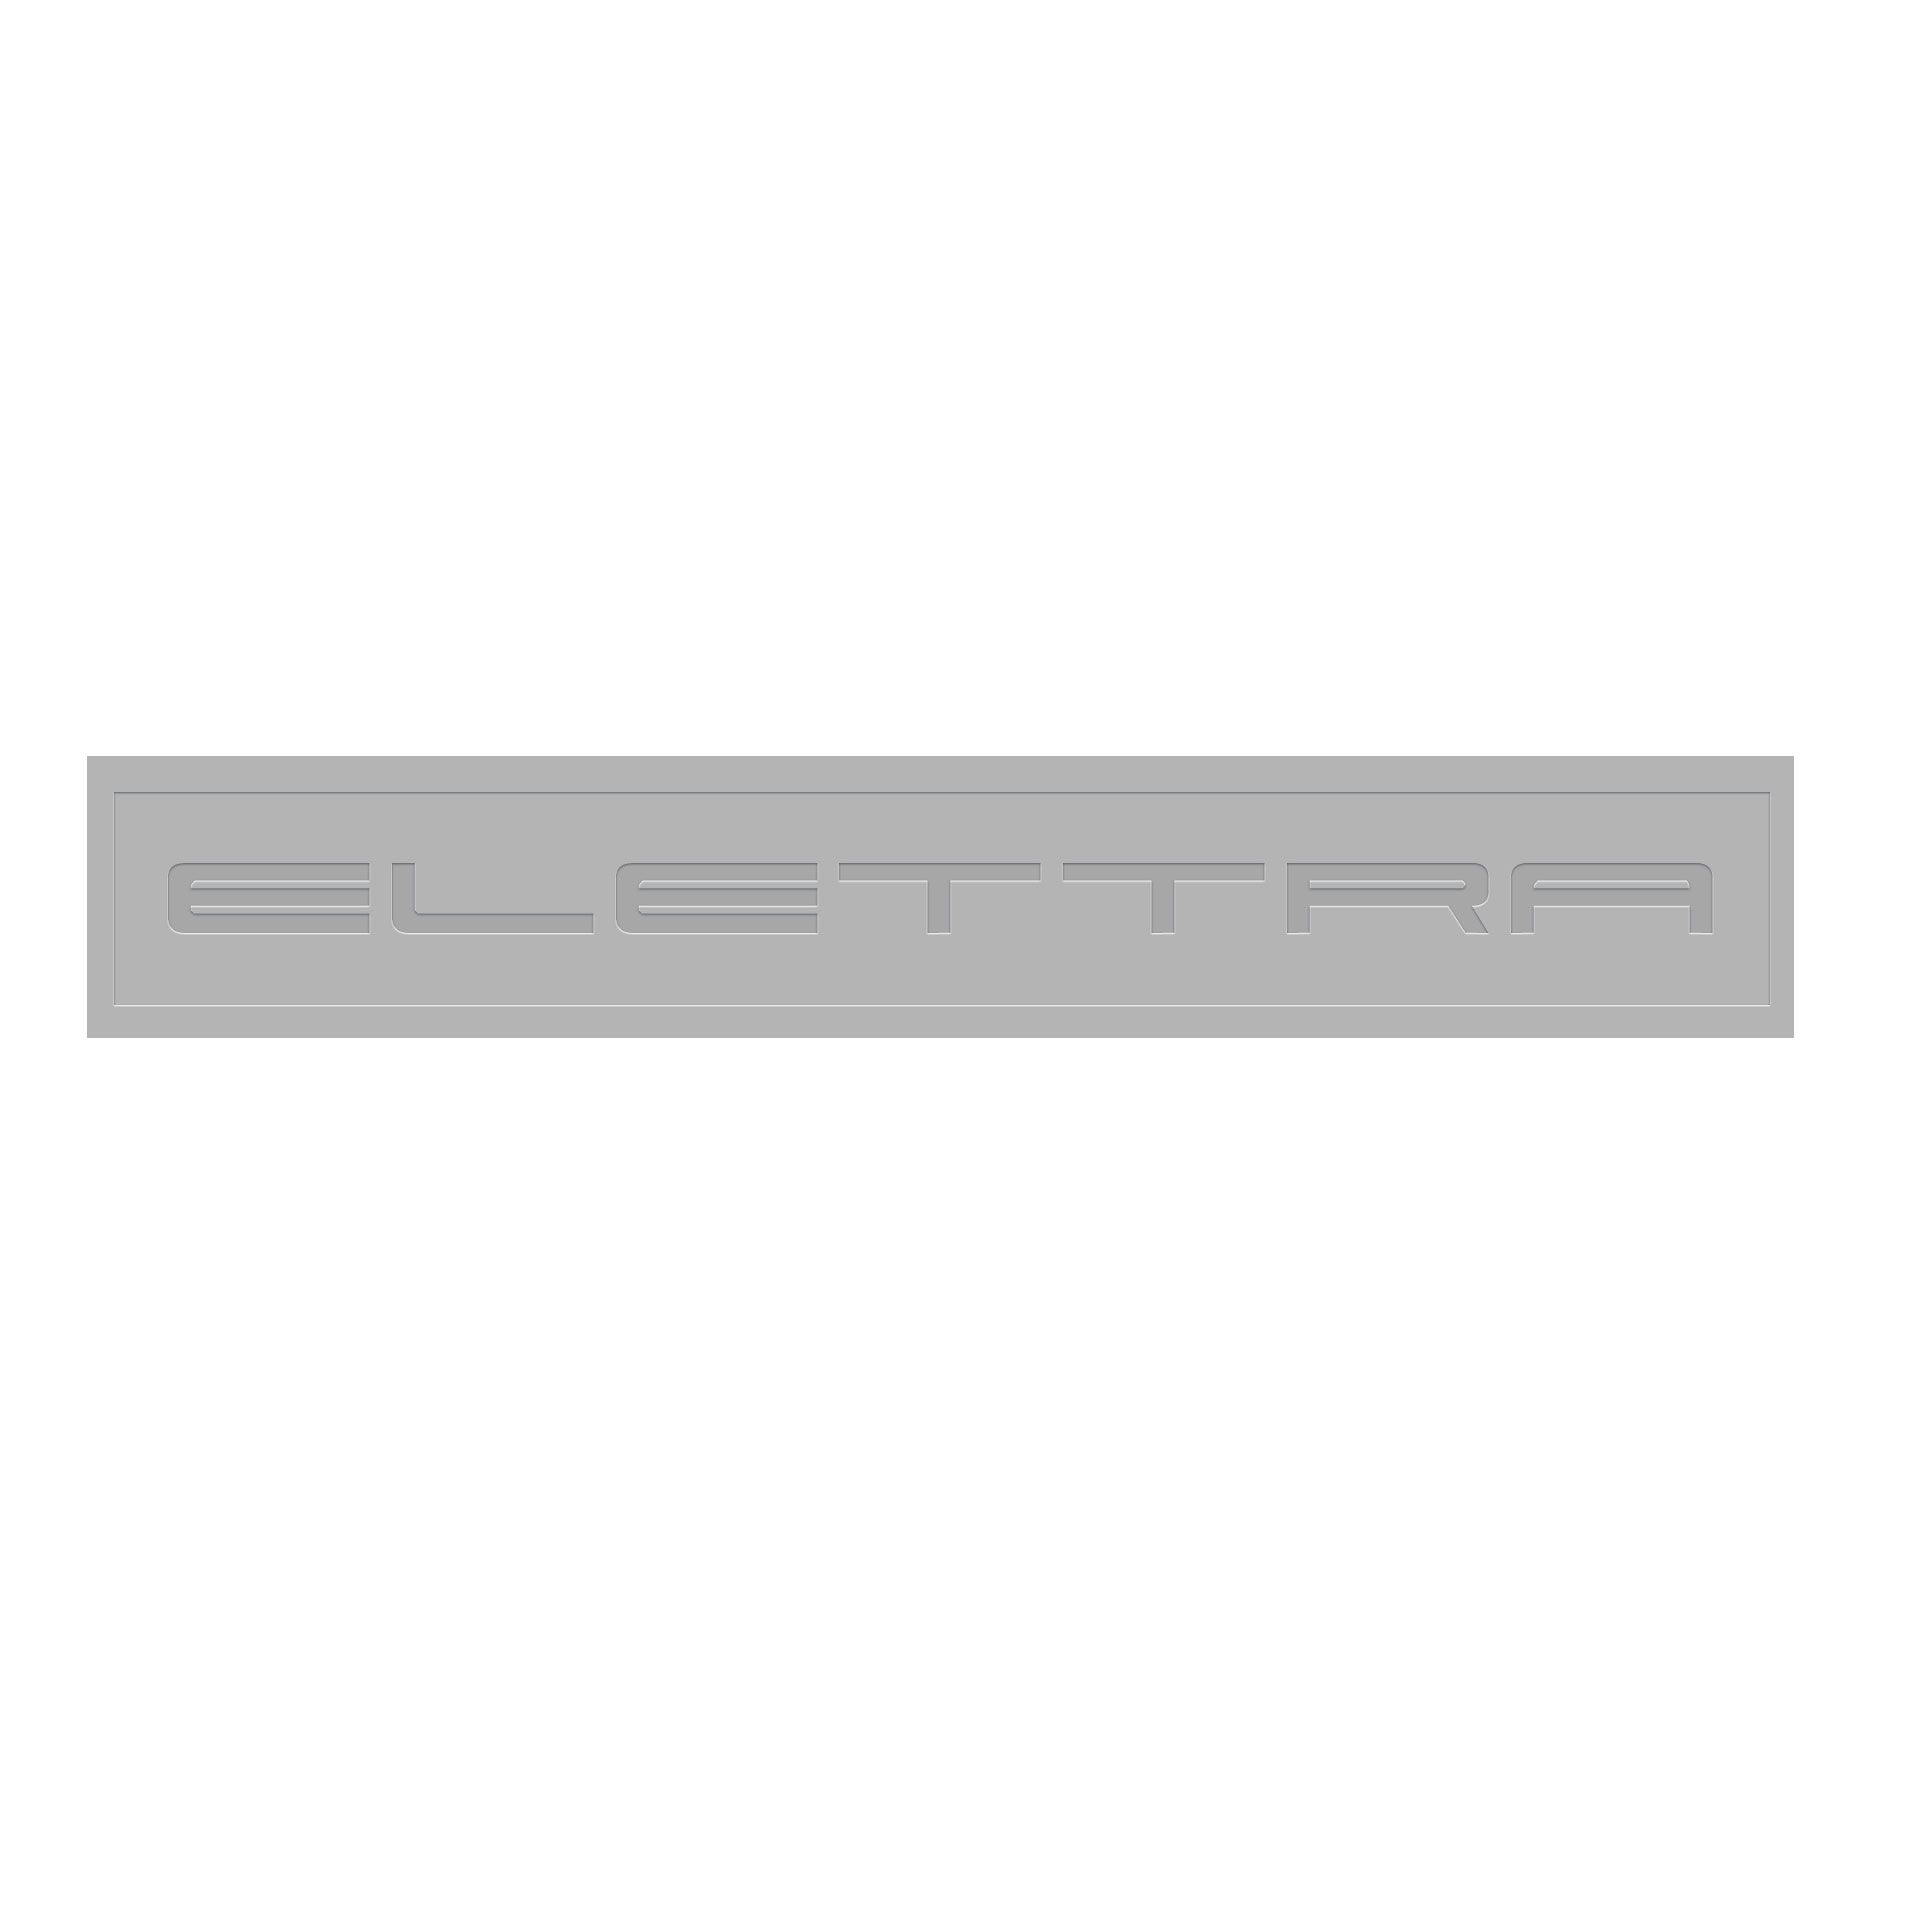 Логотип Elettra - стекольное производство - дизайнер marikkmv